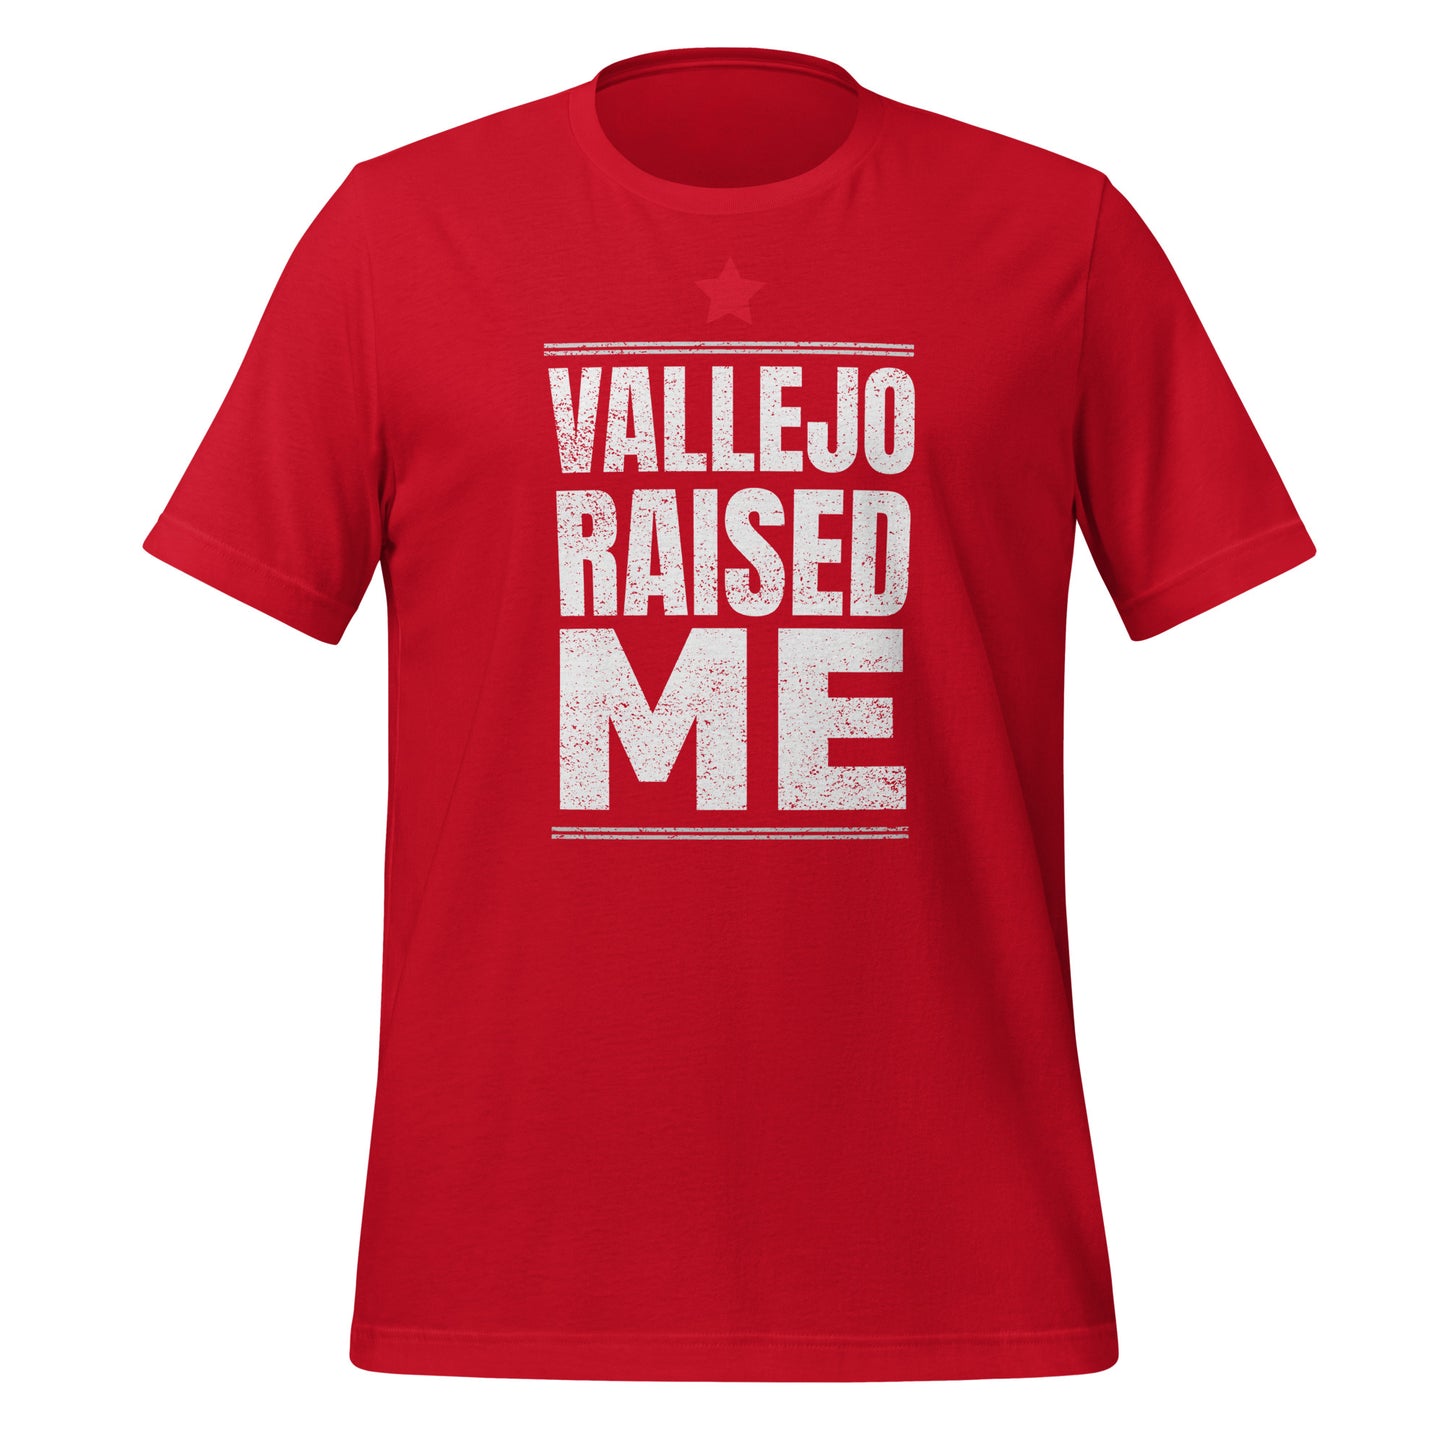 VALLEJO RAISED ME (BLOCK) Unisex T-Shirt